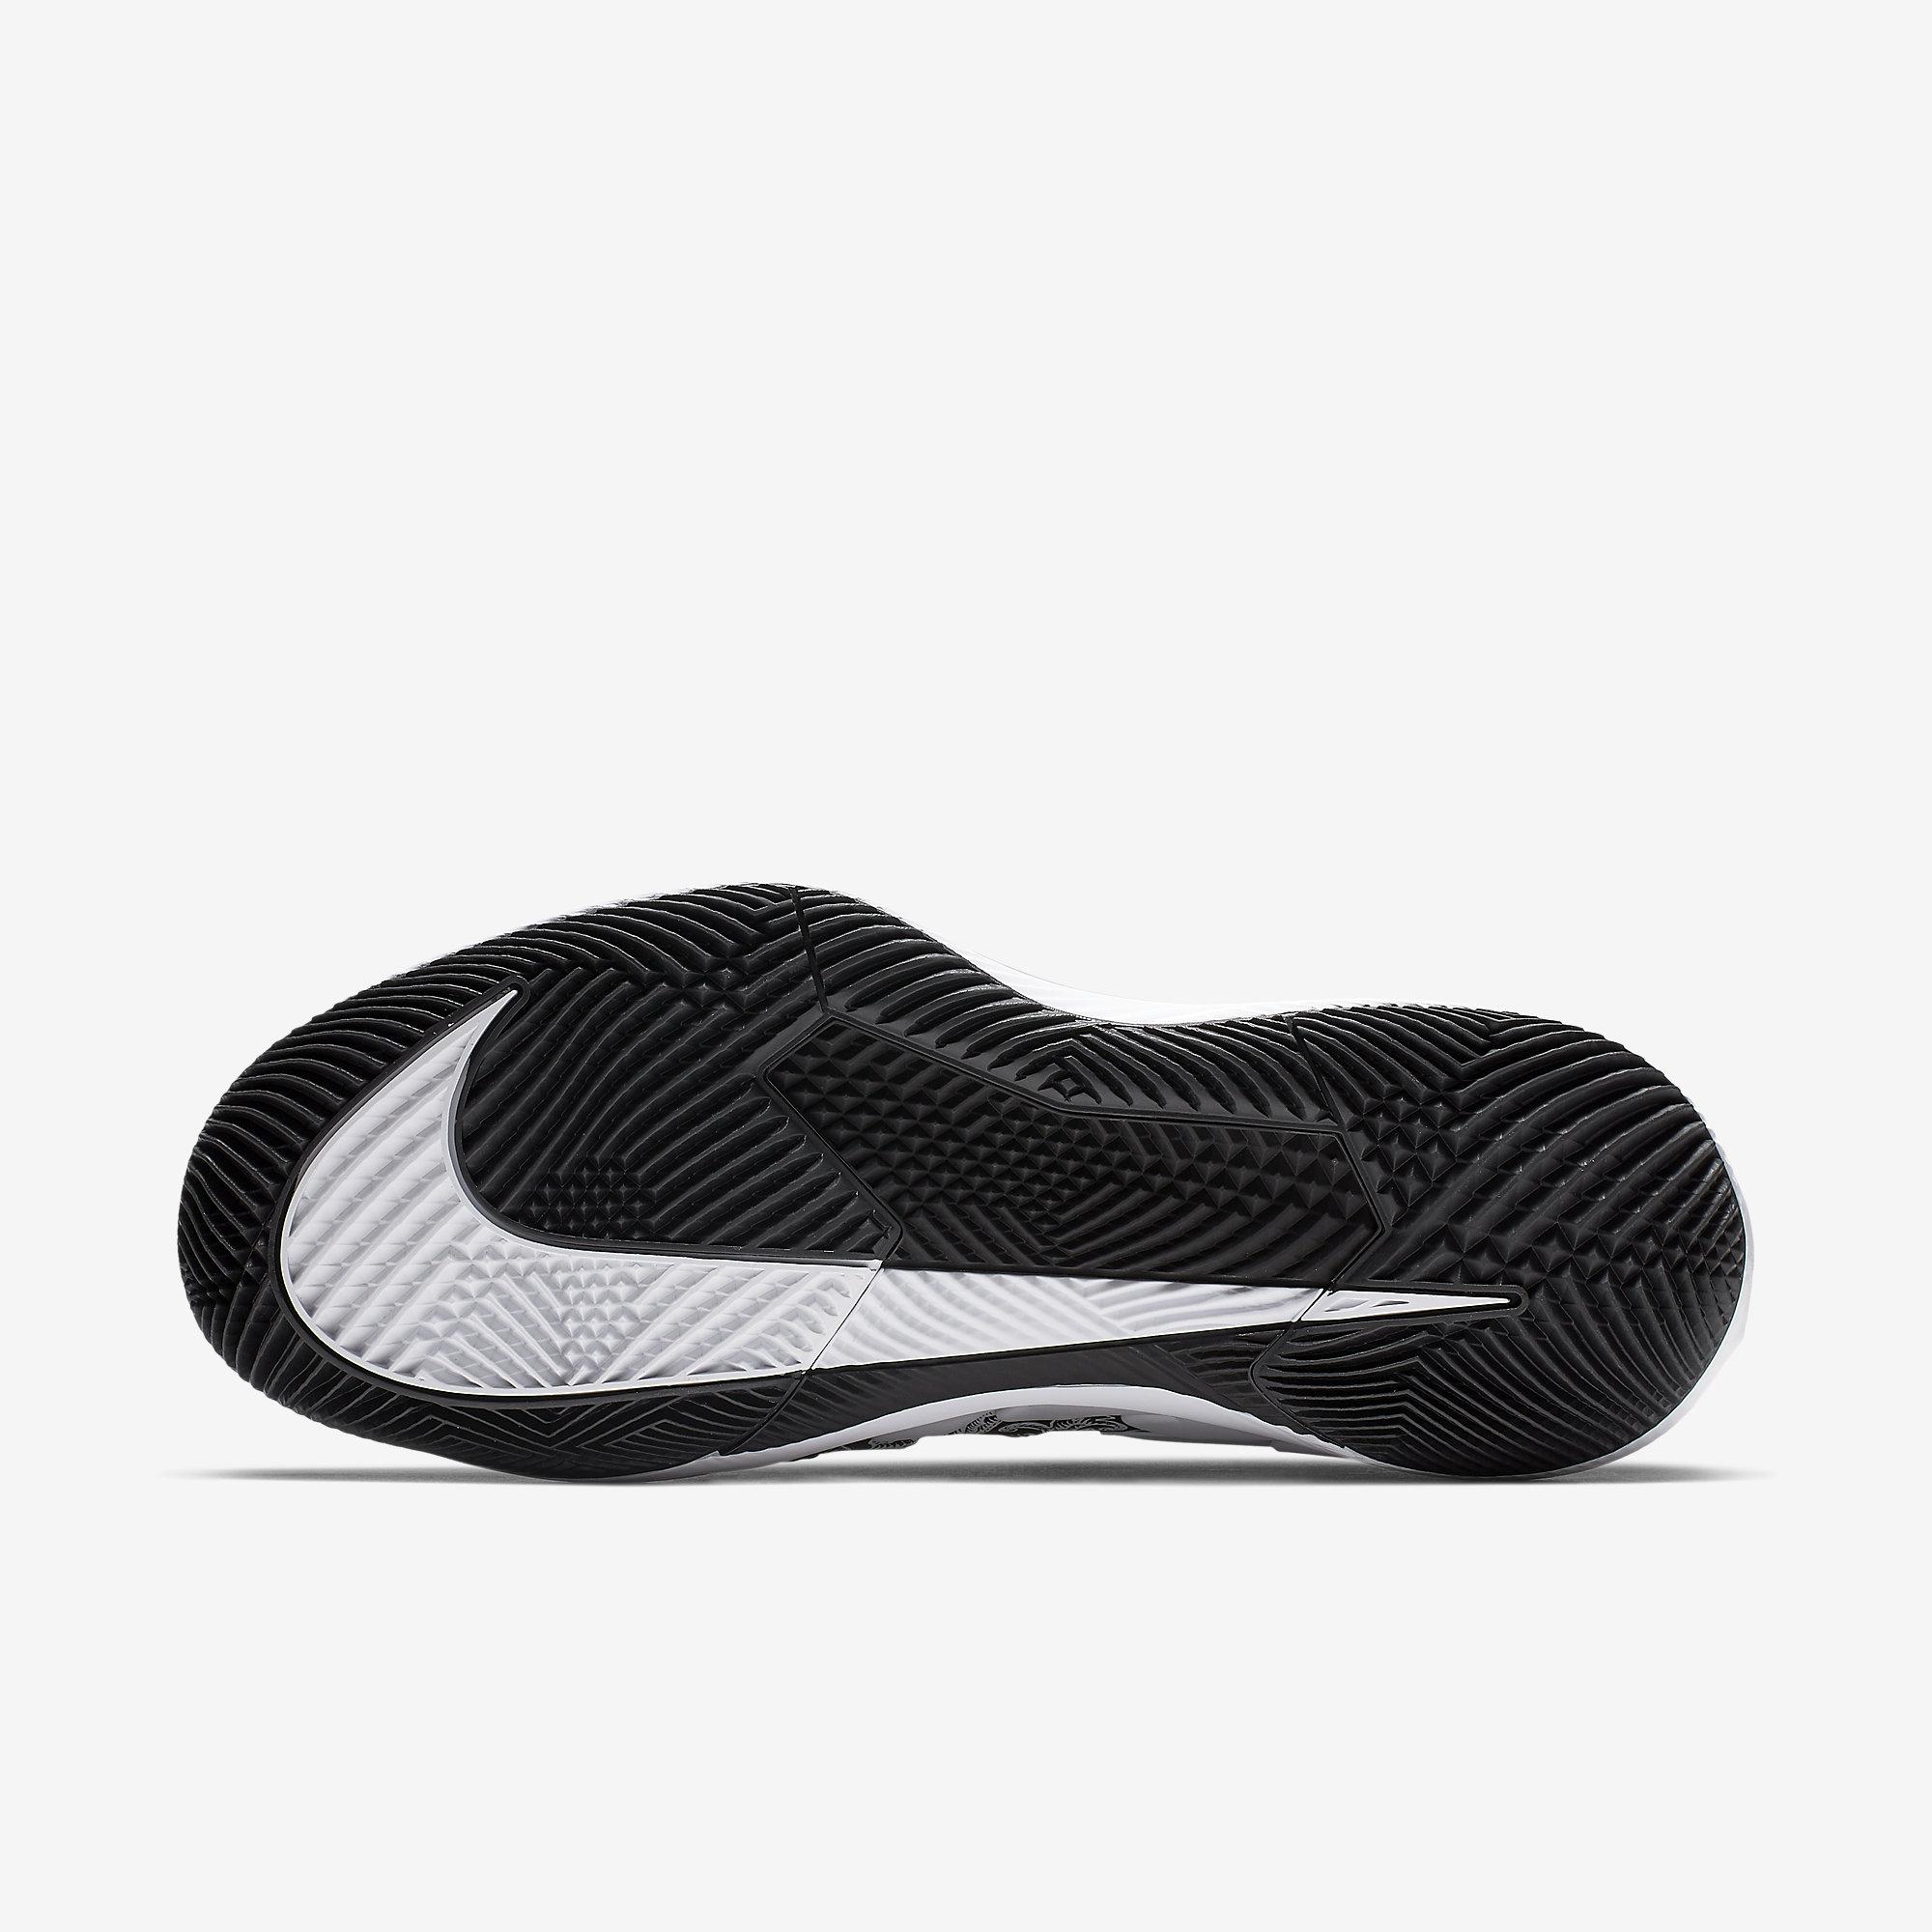 Nike Womens Air Zoom Vapor X Tennis Shoes - White/Black - Tennisnuts.com